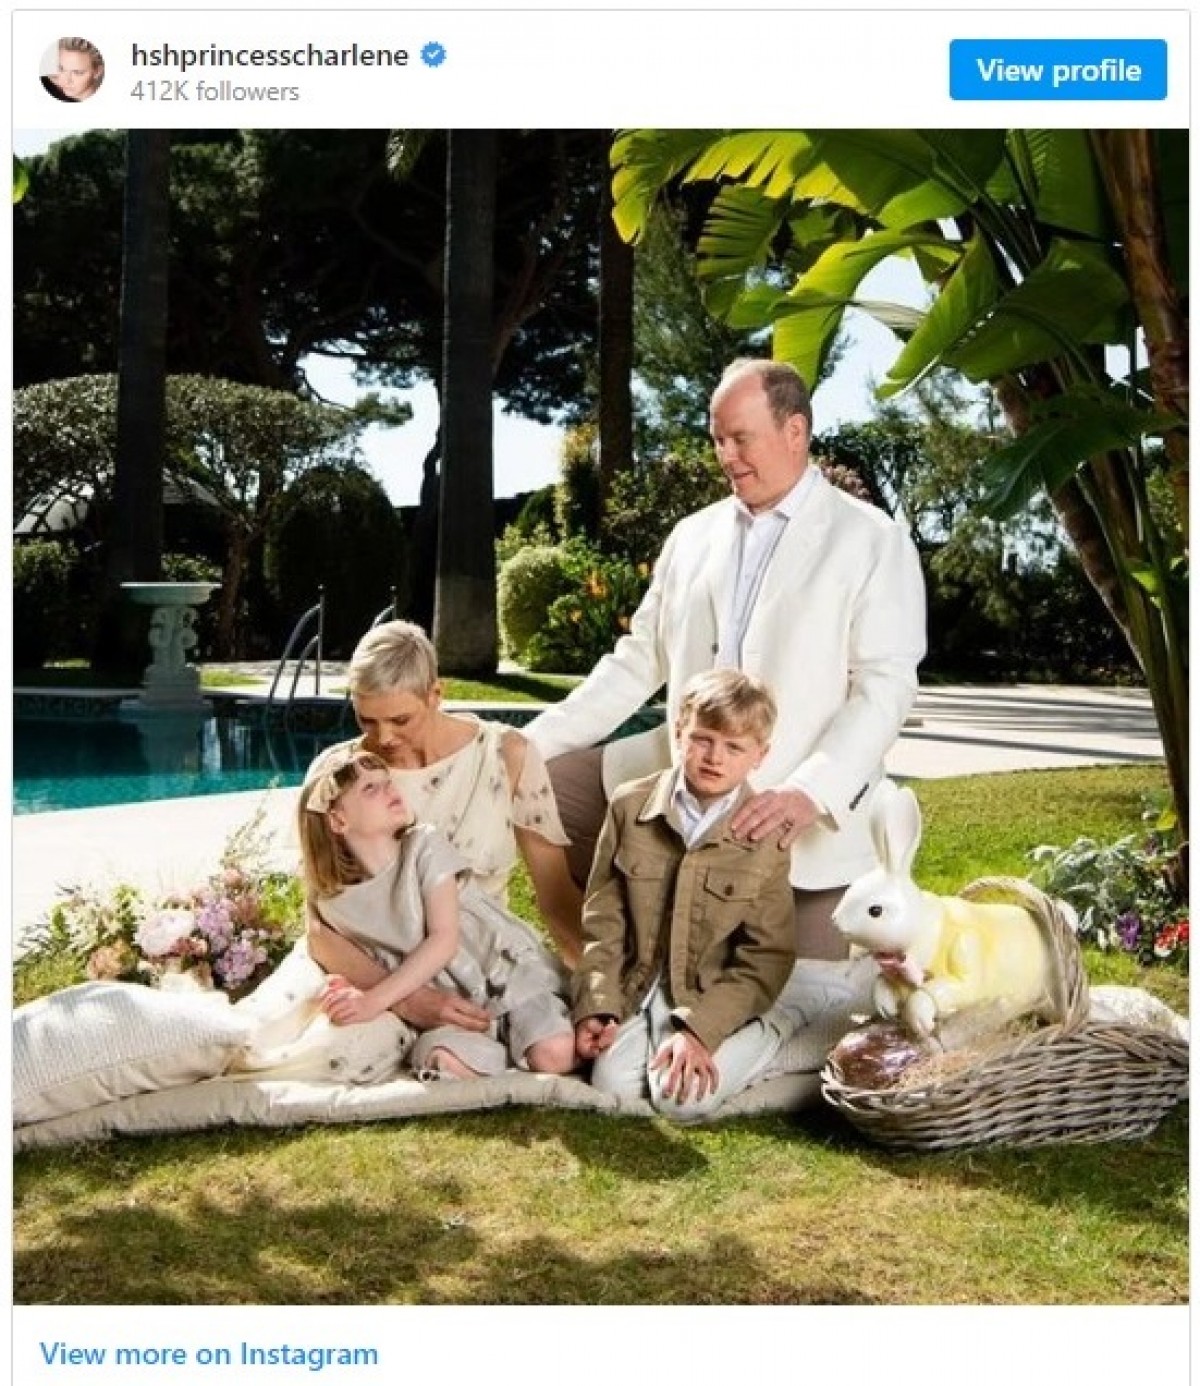 モナコ公国シャルレーヌ公妃、イースターを祝う家族写真を公開